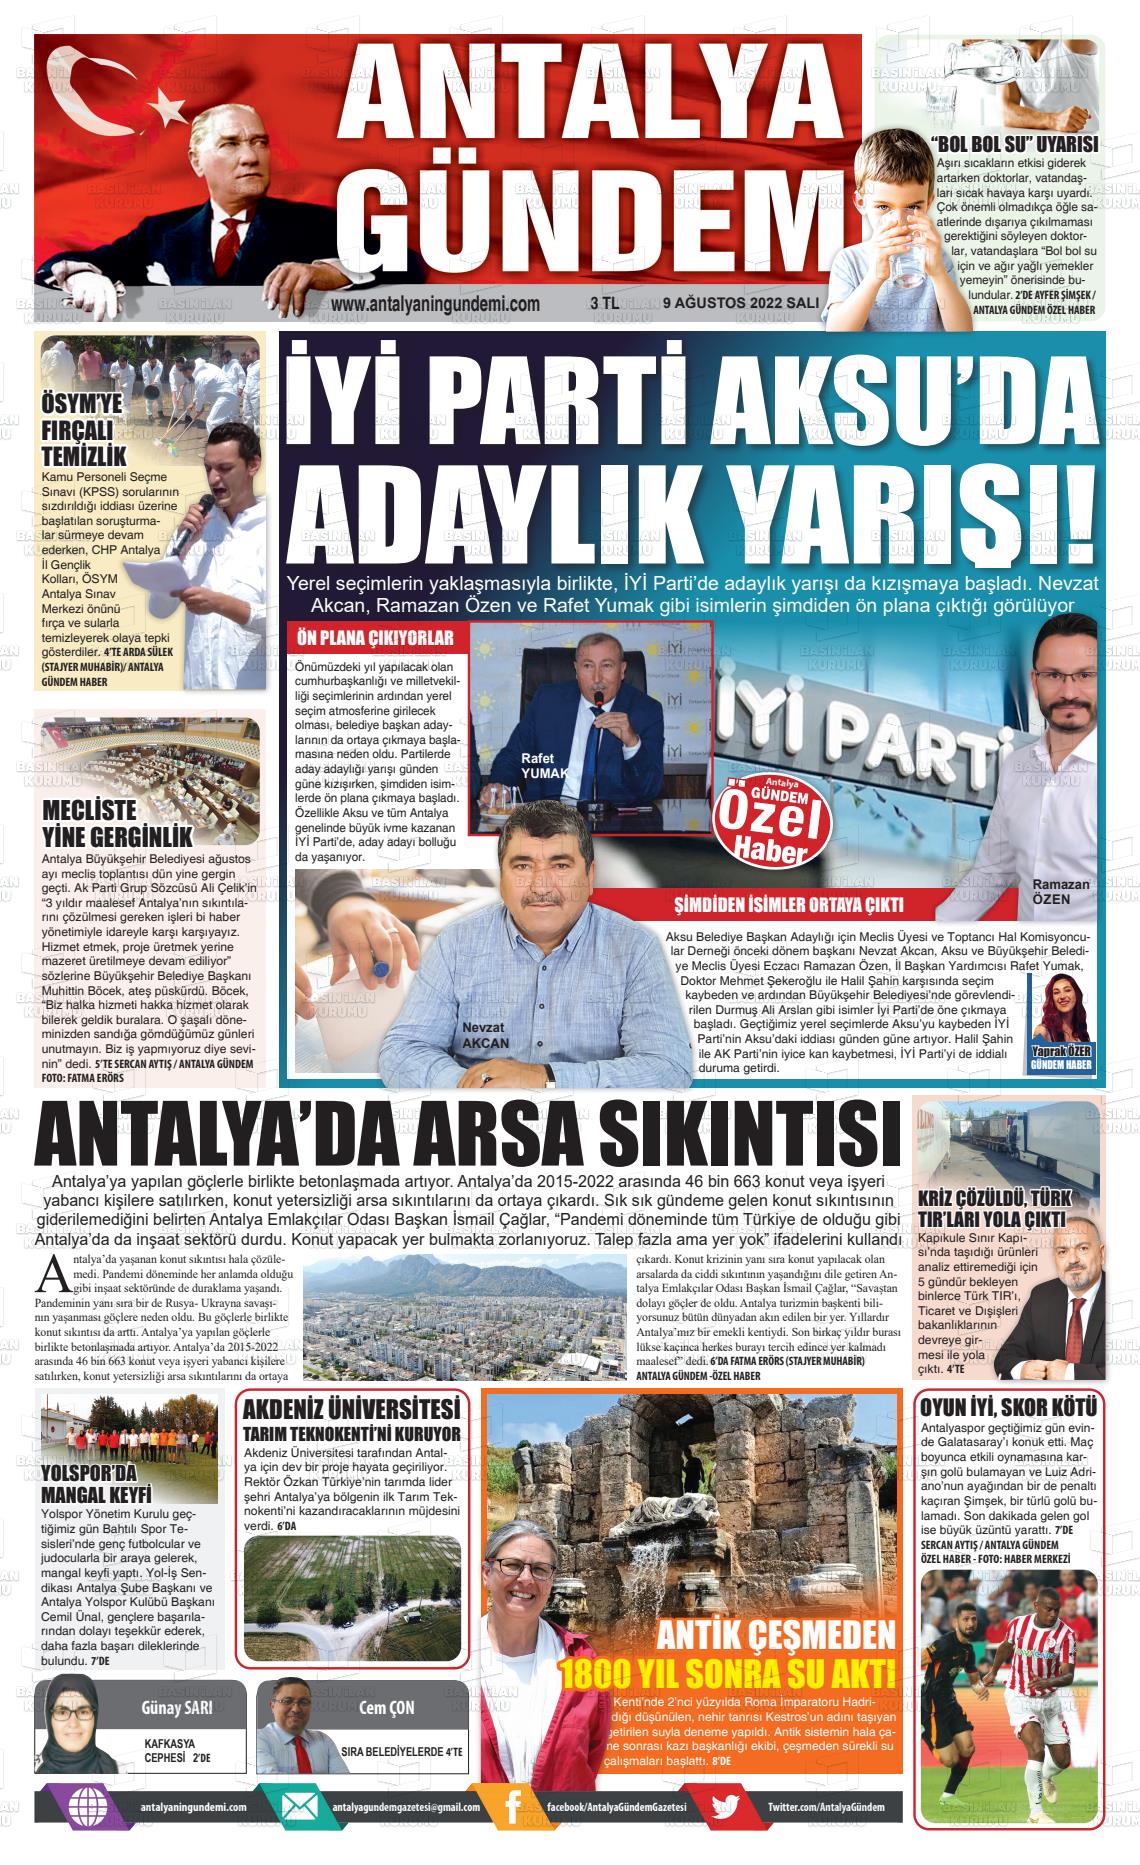 09 Ağustos 2022 Antalya'nın Gündemi Gazete Manşeti